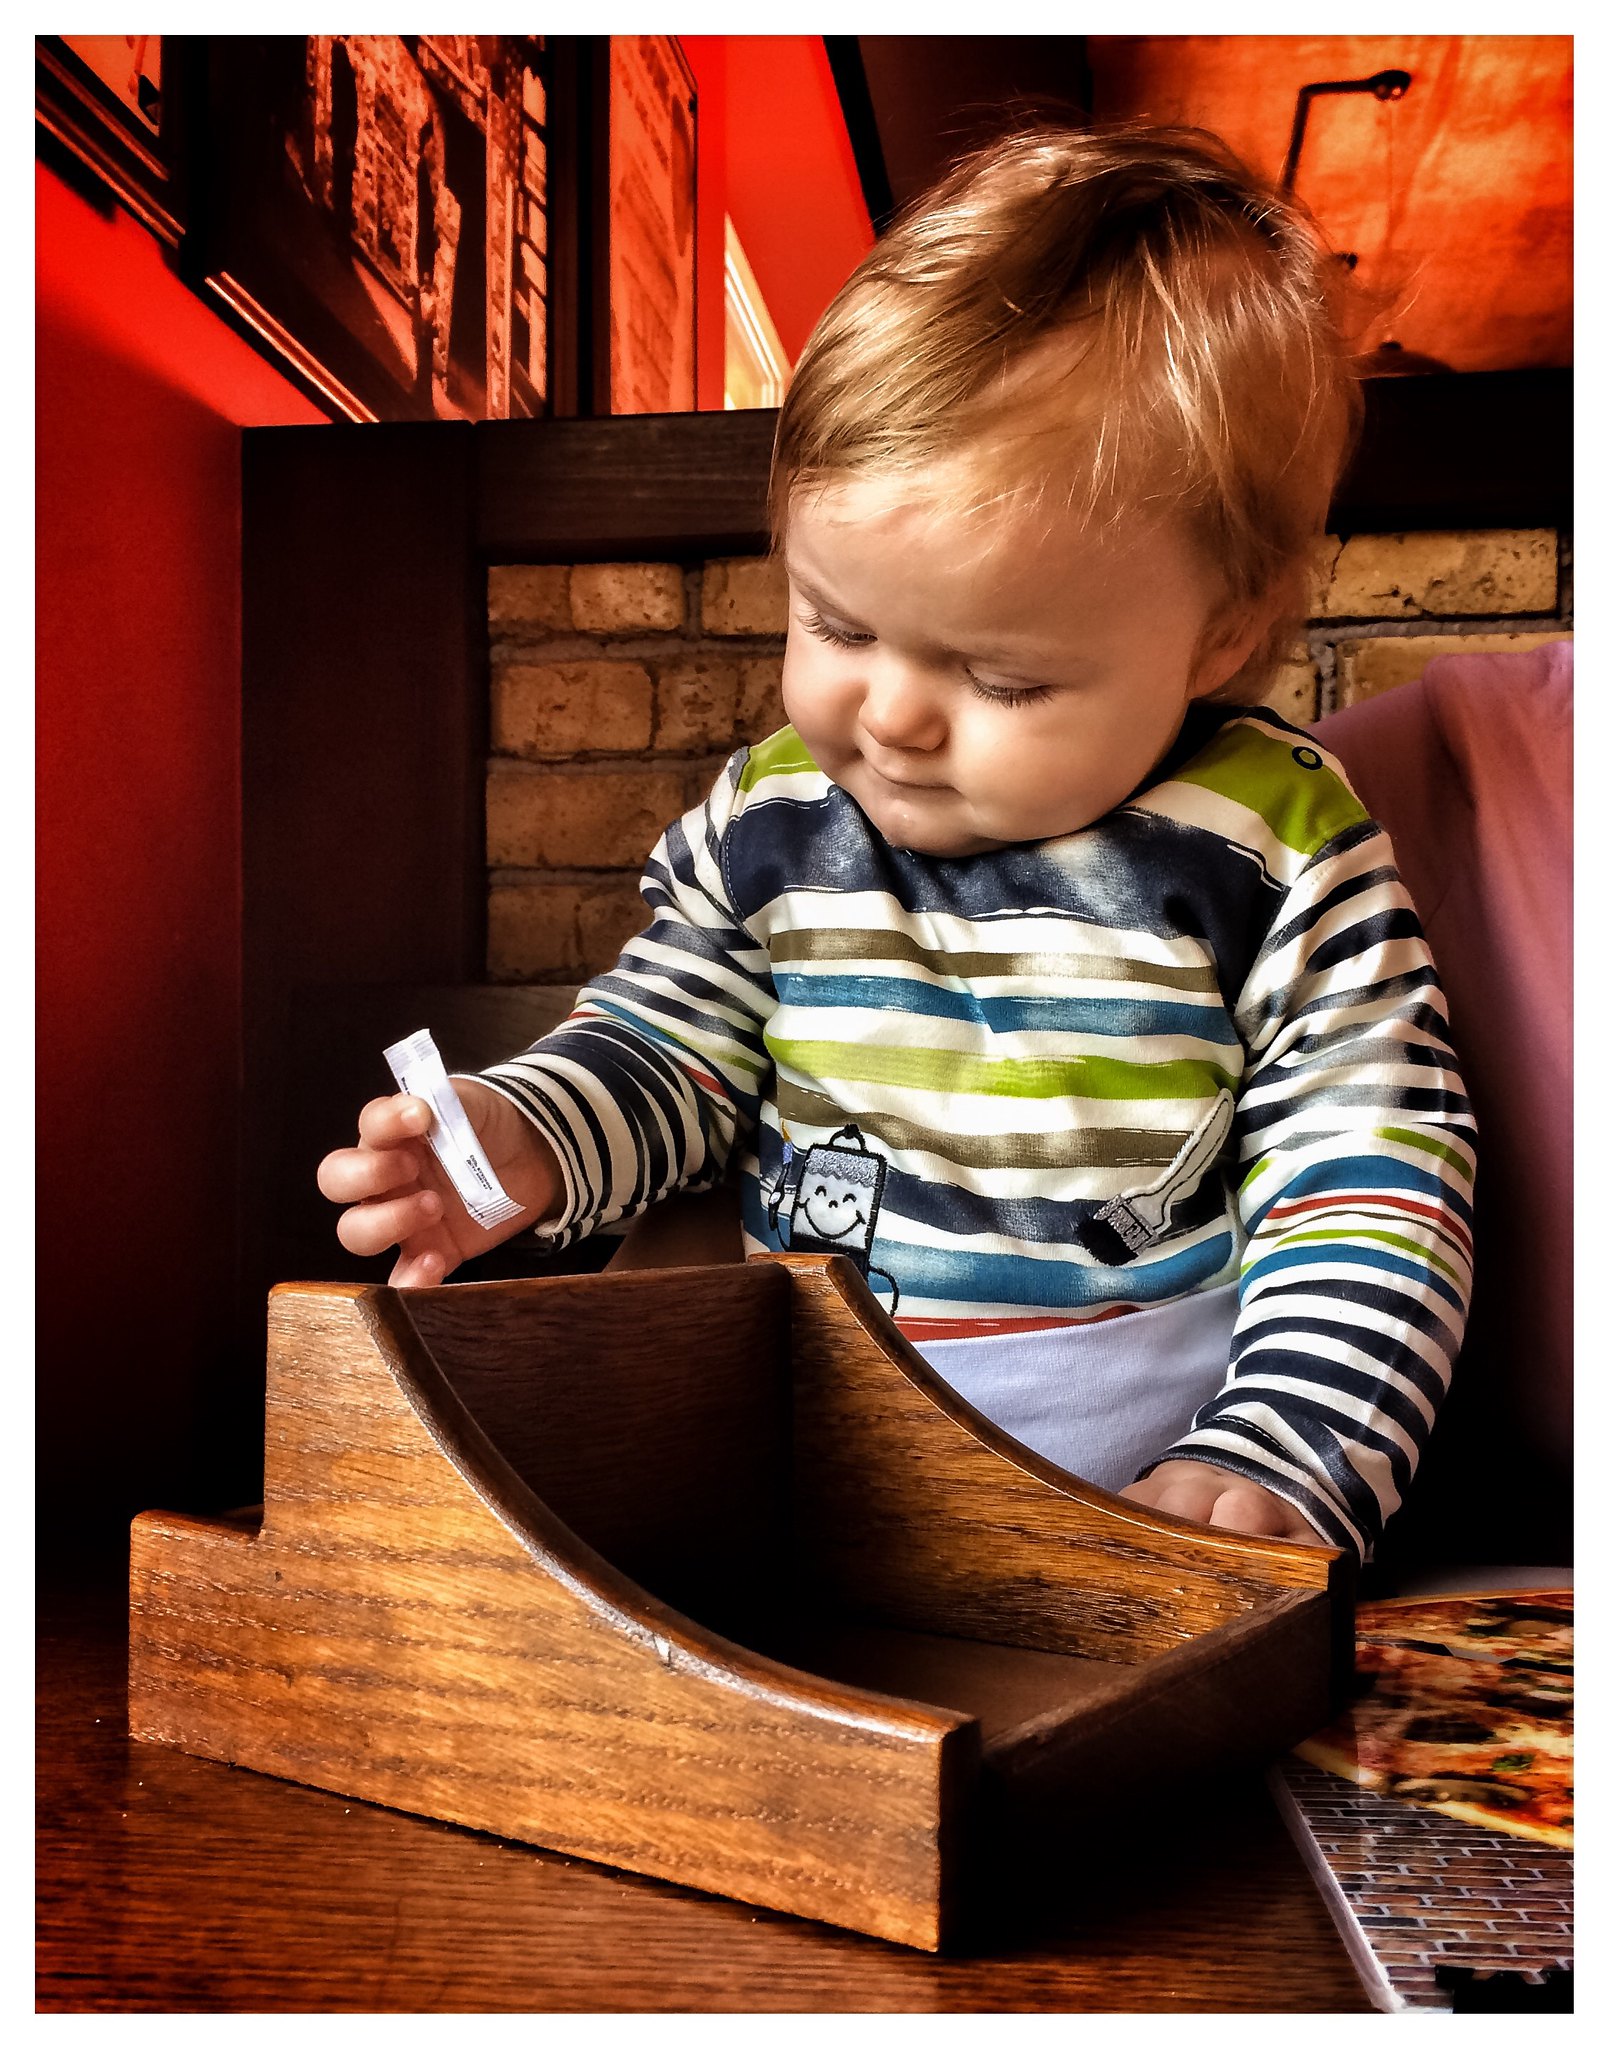 Ein kleiner Junge spielt mit einem Zuckertütchen in einem Restaurant | Quelle: Flickr